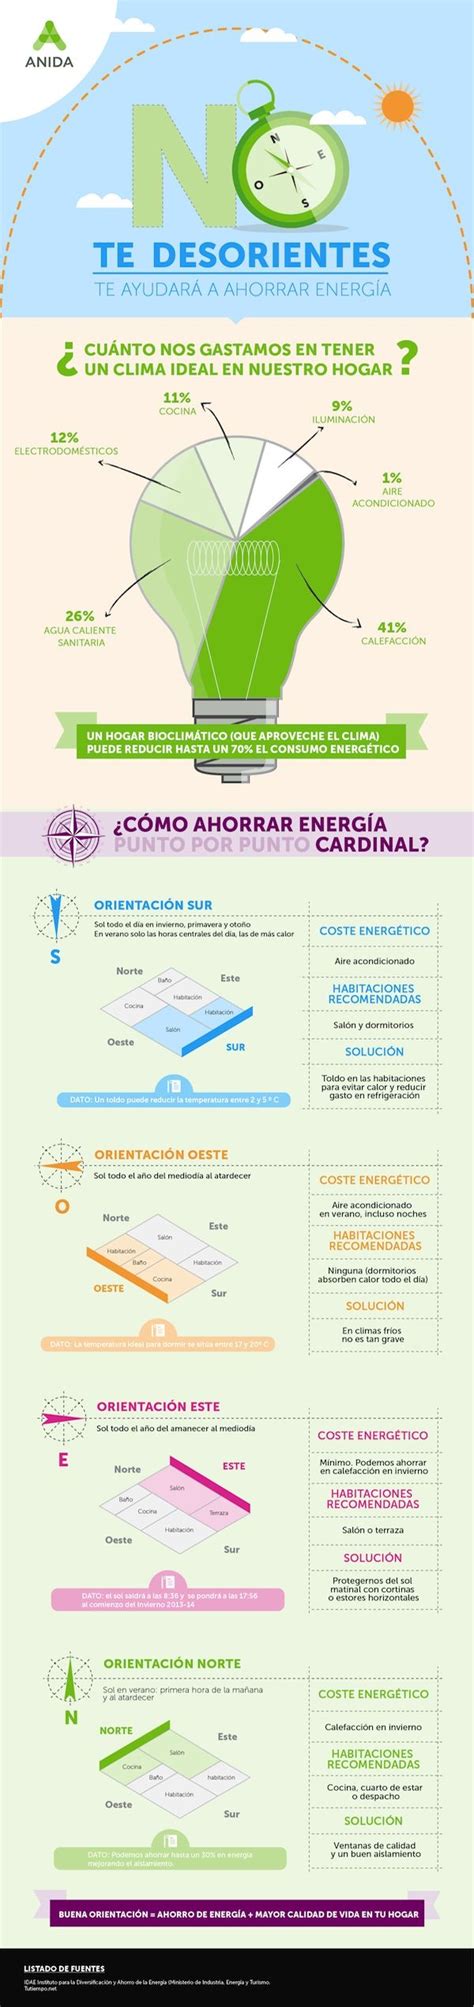 Portal Eficiencia Energética Y Arquitectura Ovacen Ahorro De